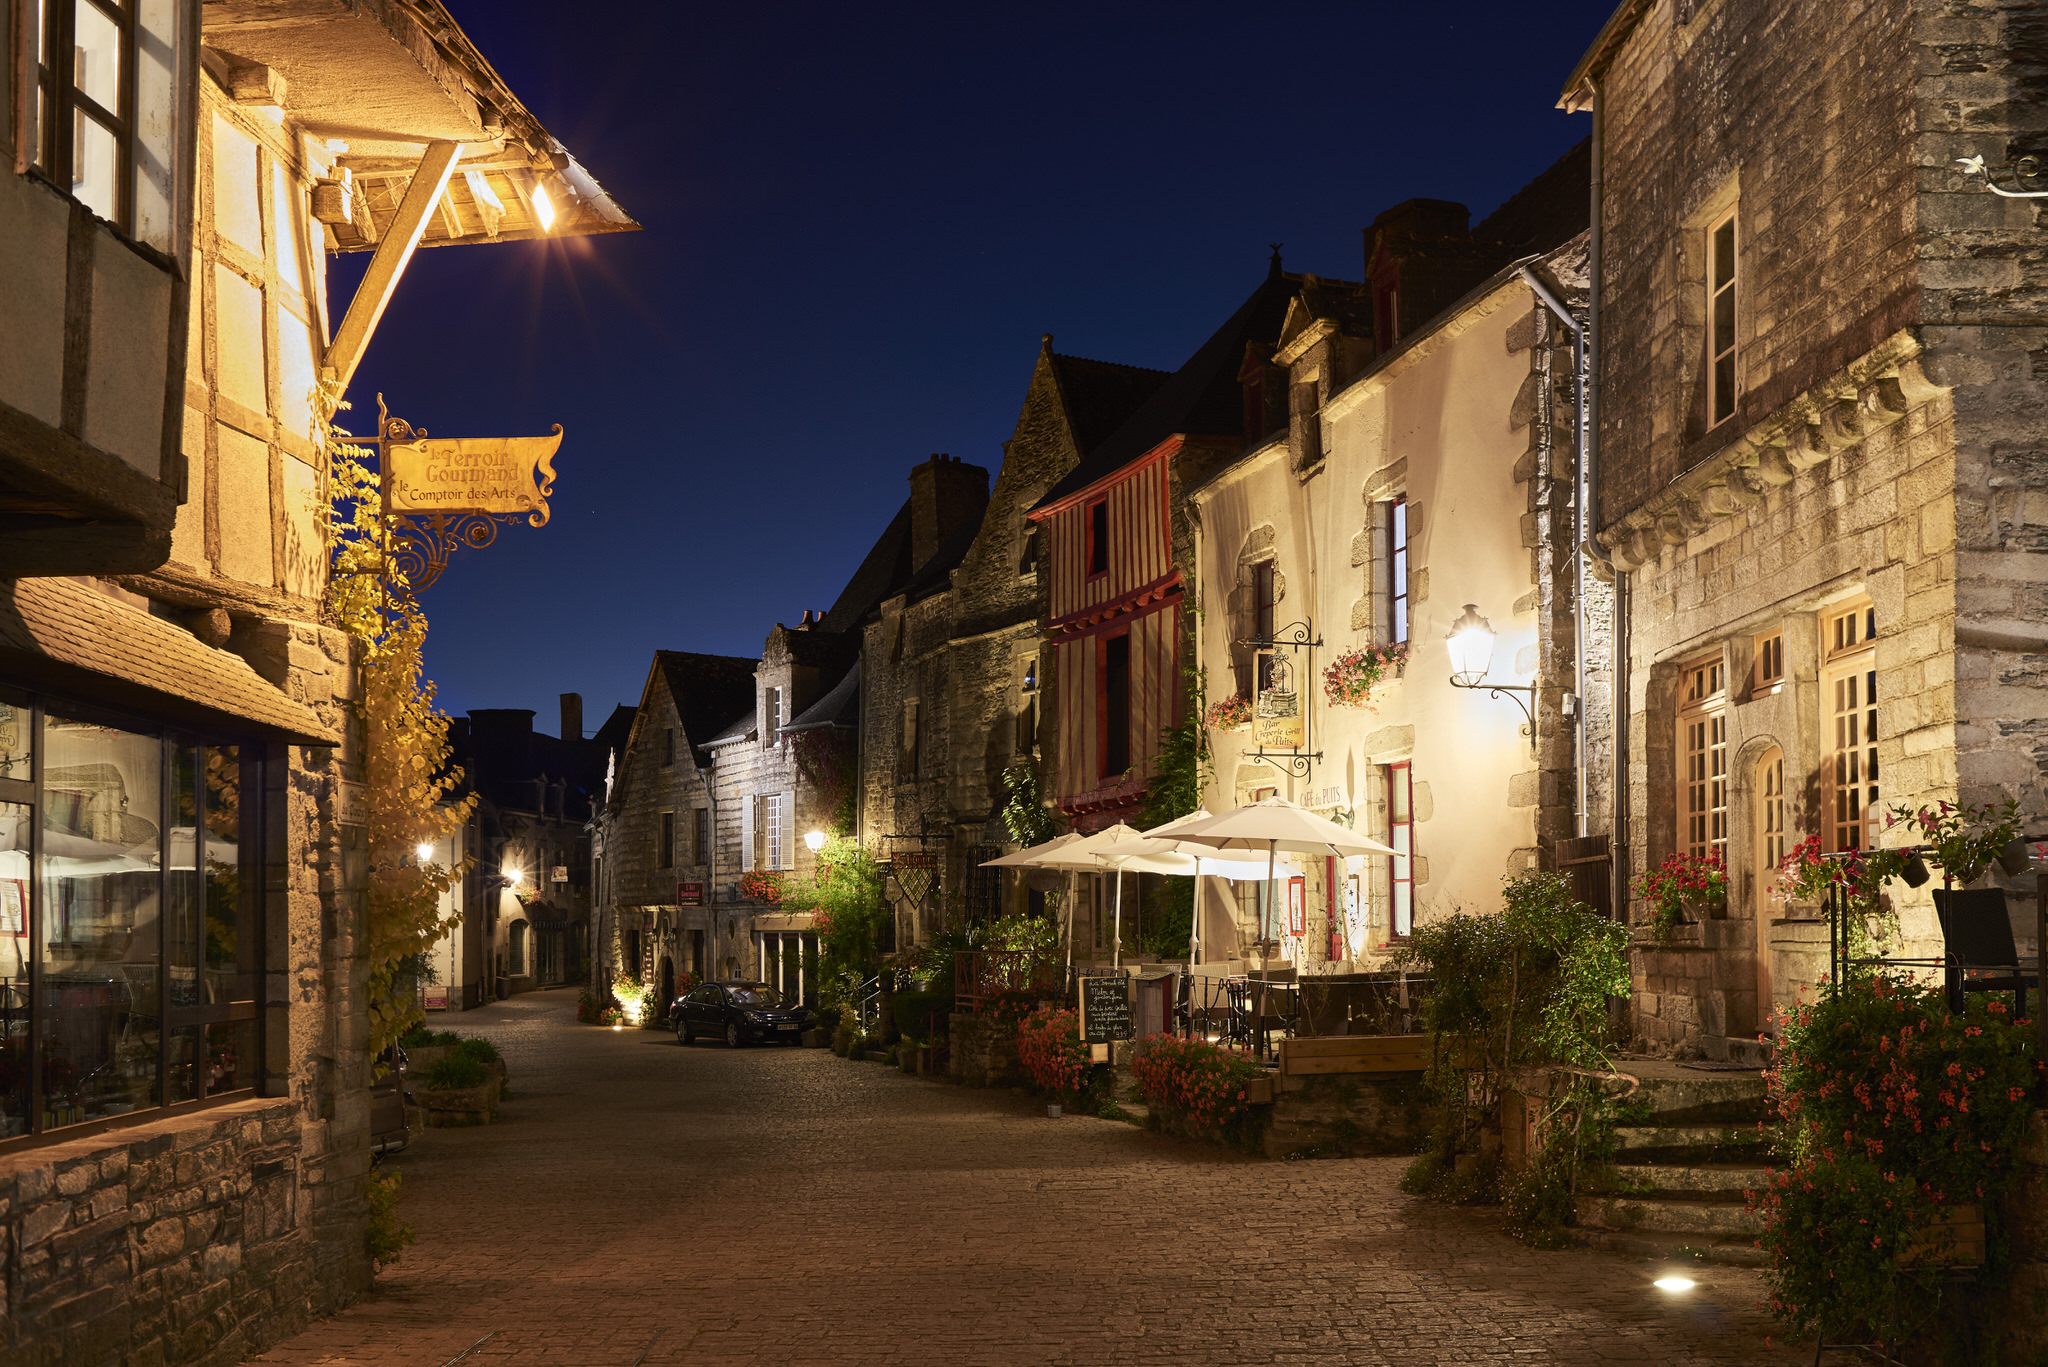 Spaziergang durch die beleuchteten Straßen von Rochefort en Terre (Morbihan)